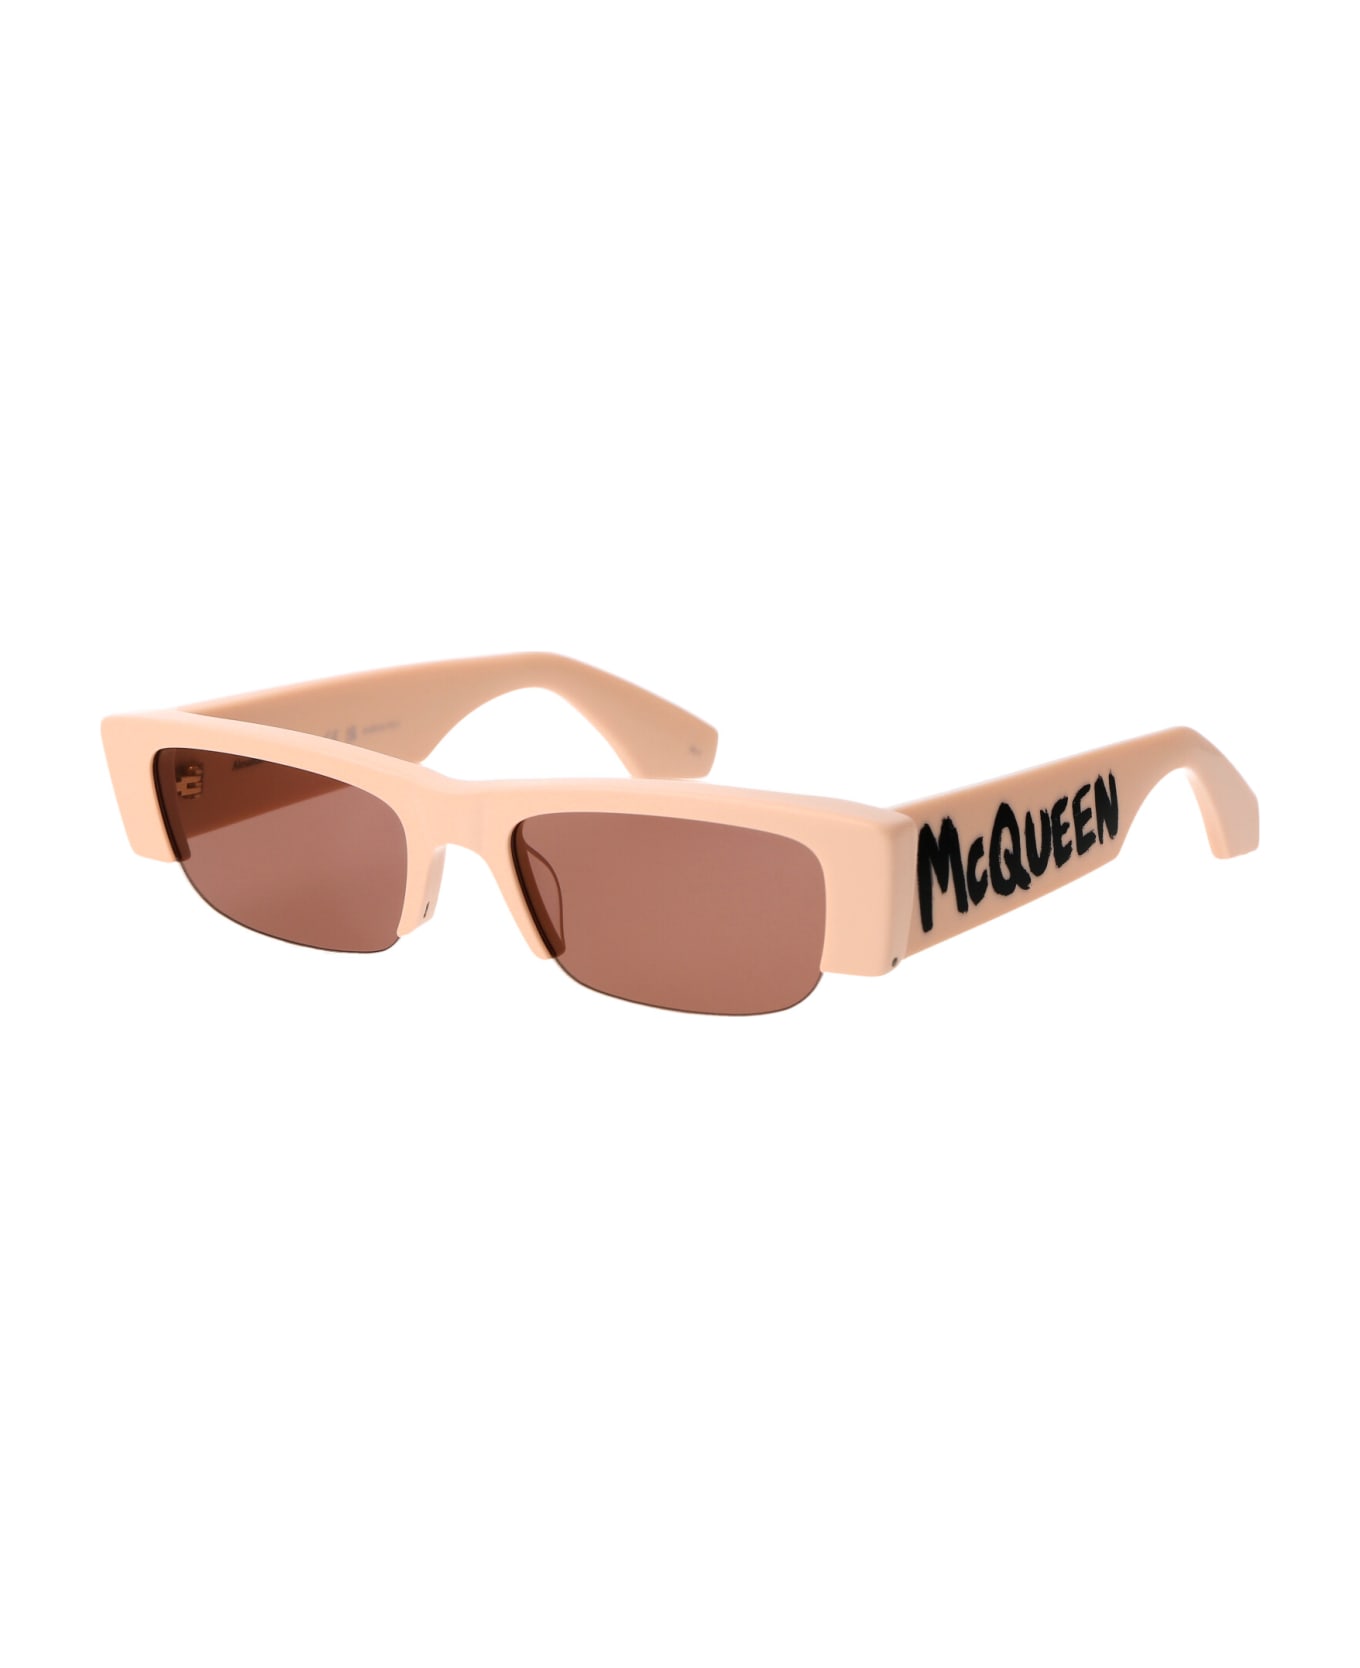 Alexander McQueen Eyewear Am0404s Sunglasses - 003 PINK PINK PINK